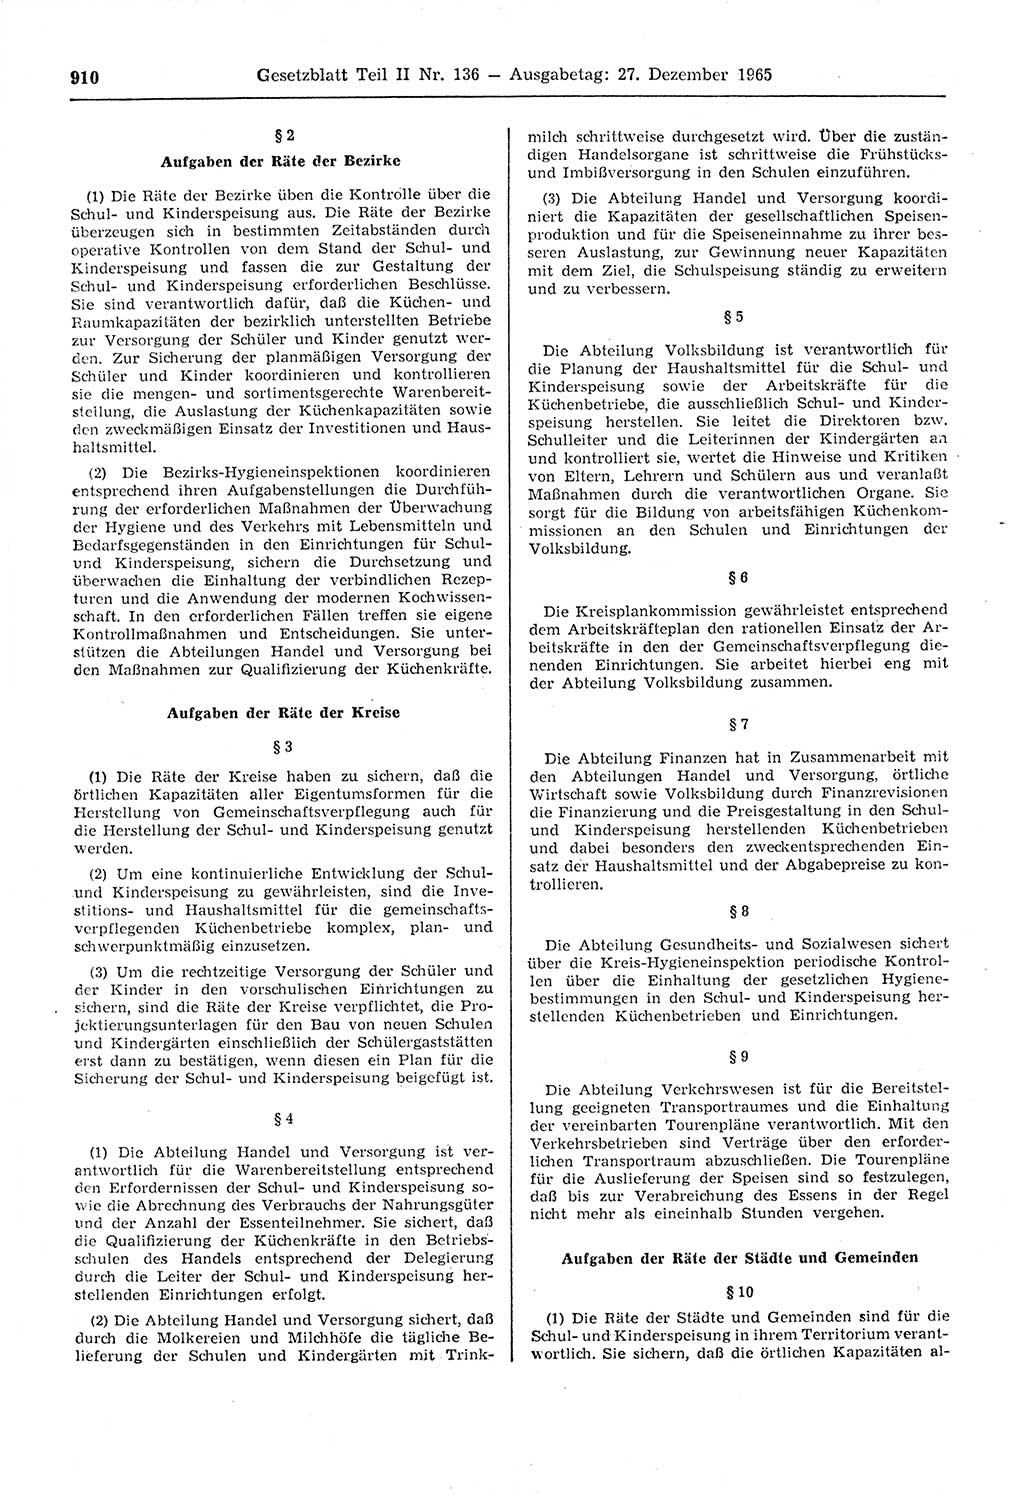 Gesetzblatt (GBl.) der Deutschen Demokratischen Republik (DDR) Teil ⅠⅠ 1965, Seite 910 (GBl. DDR ⅠⅠ 1965, S. 910)